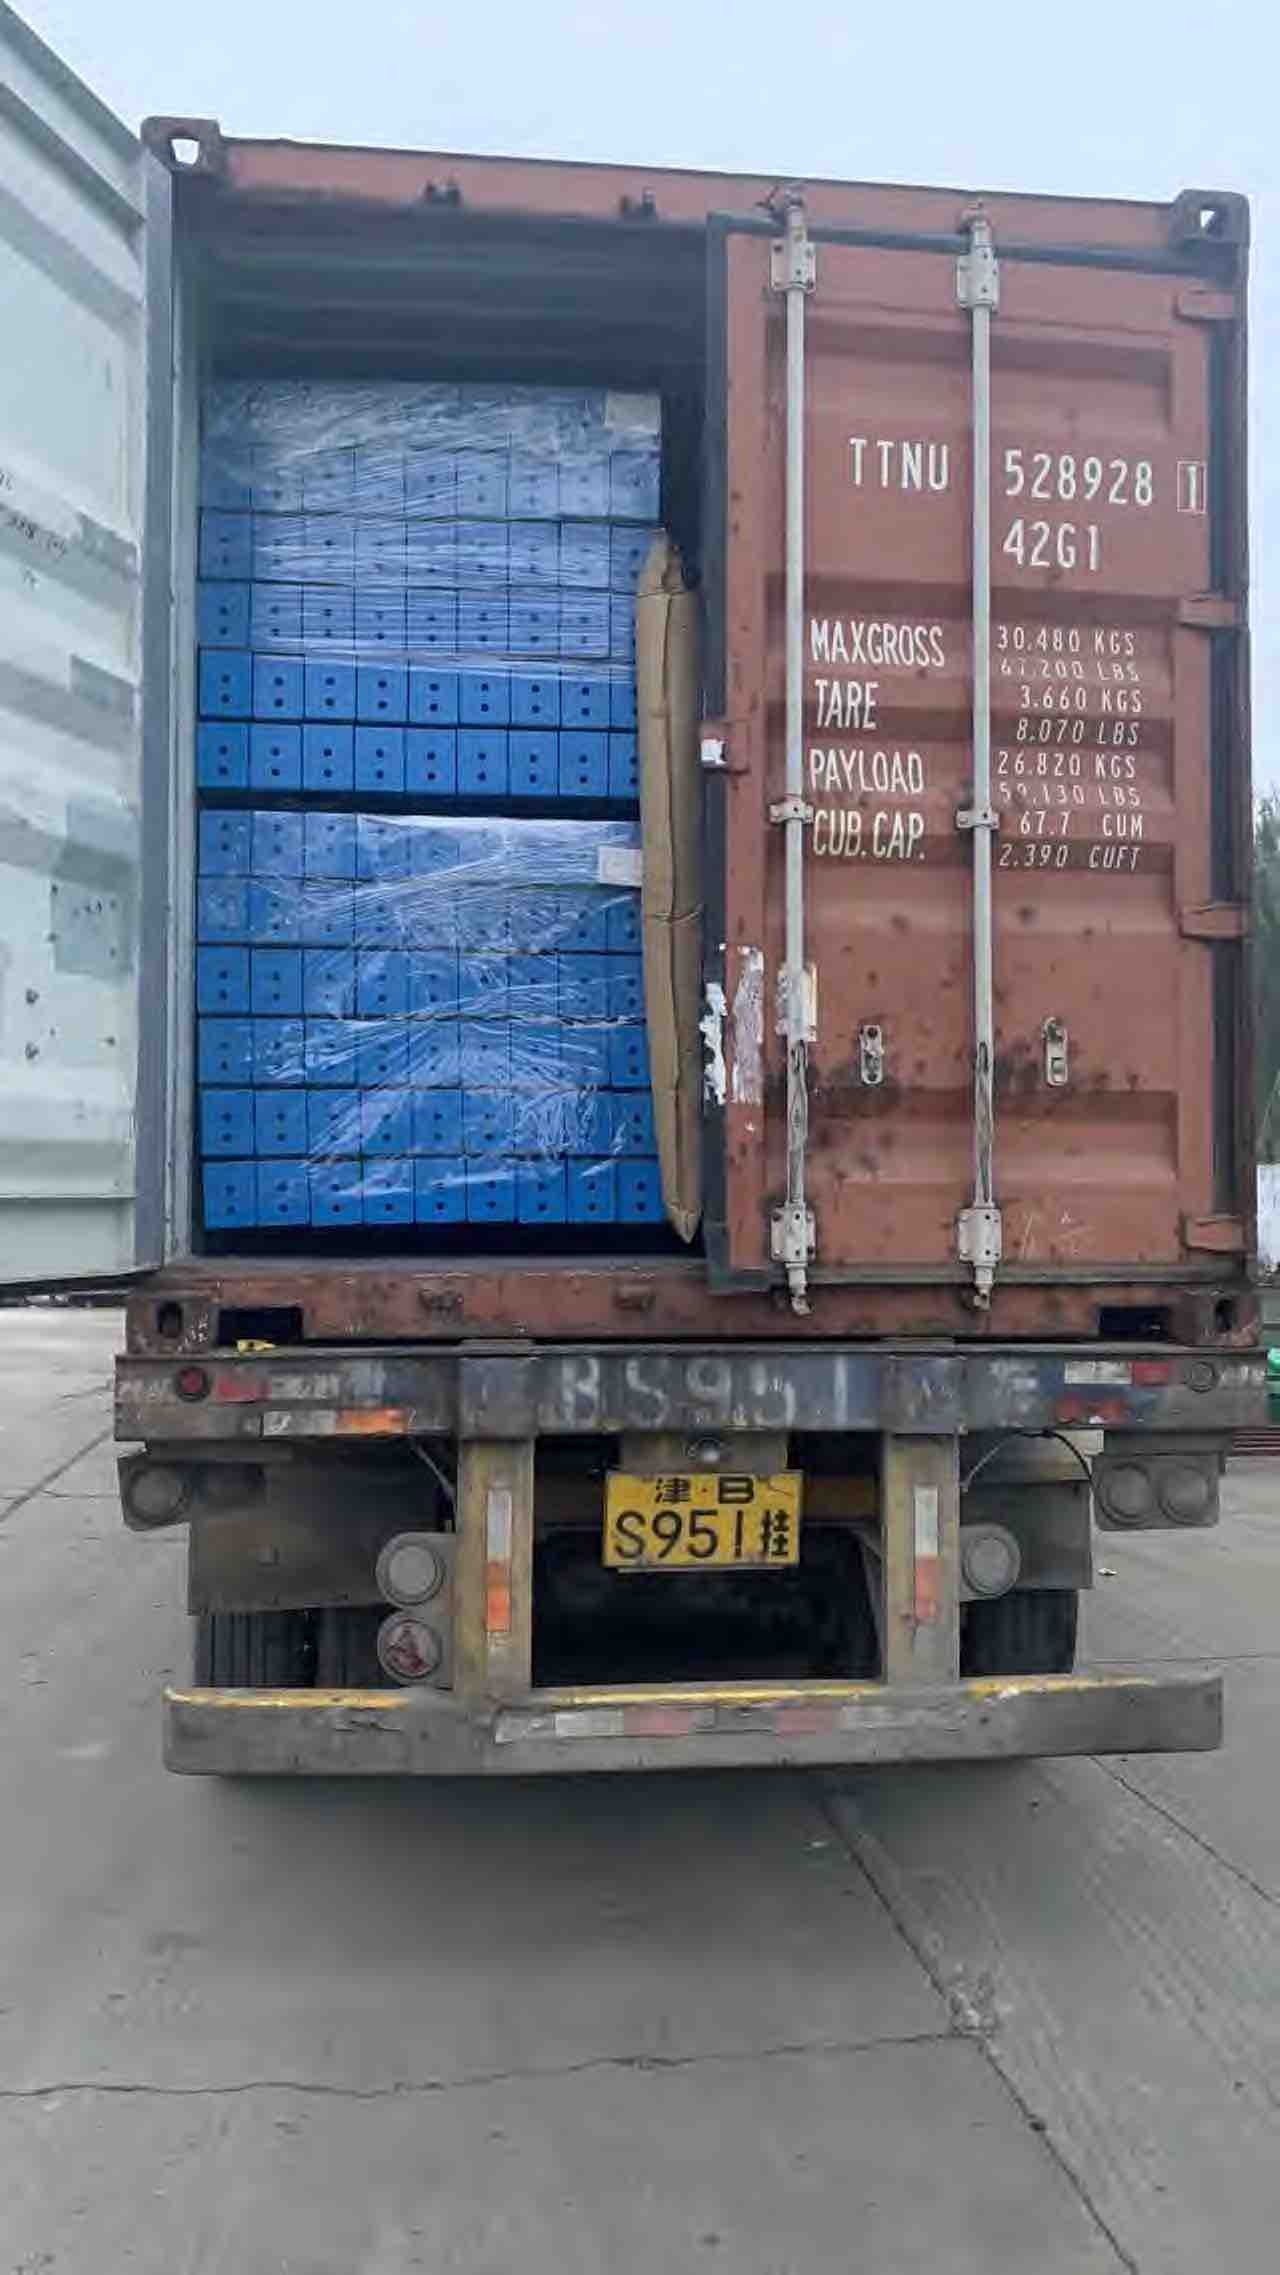 Uracking:Pallet rack on shipment